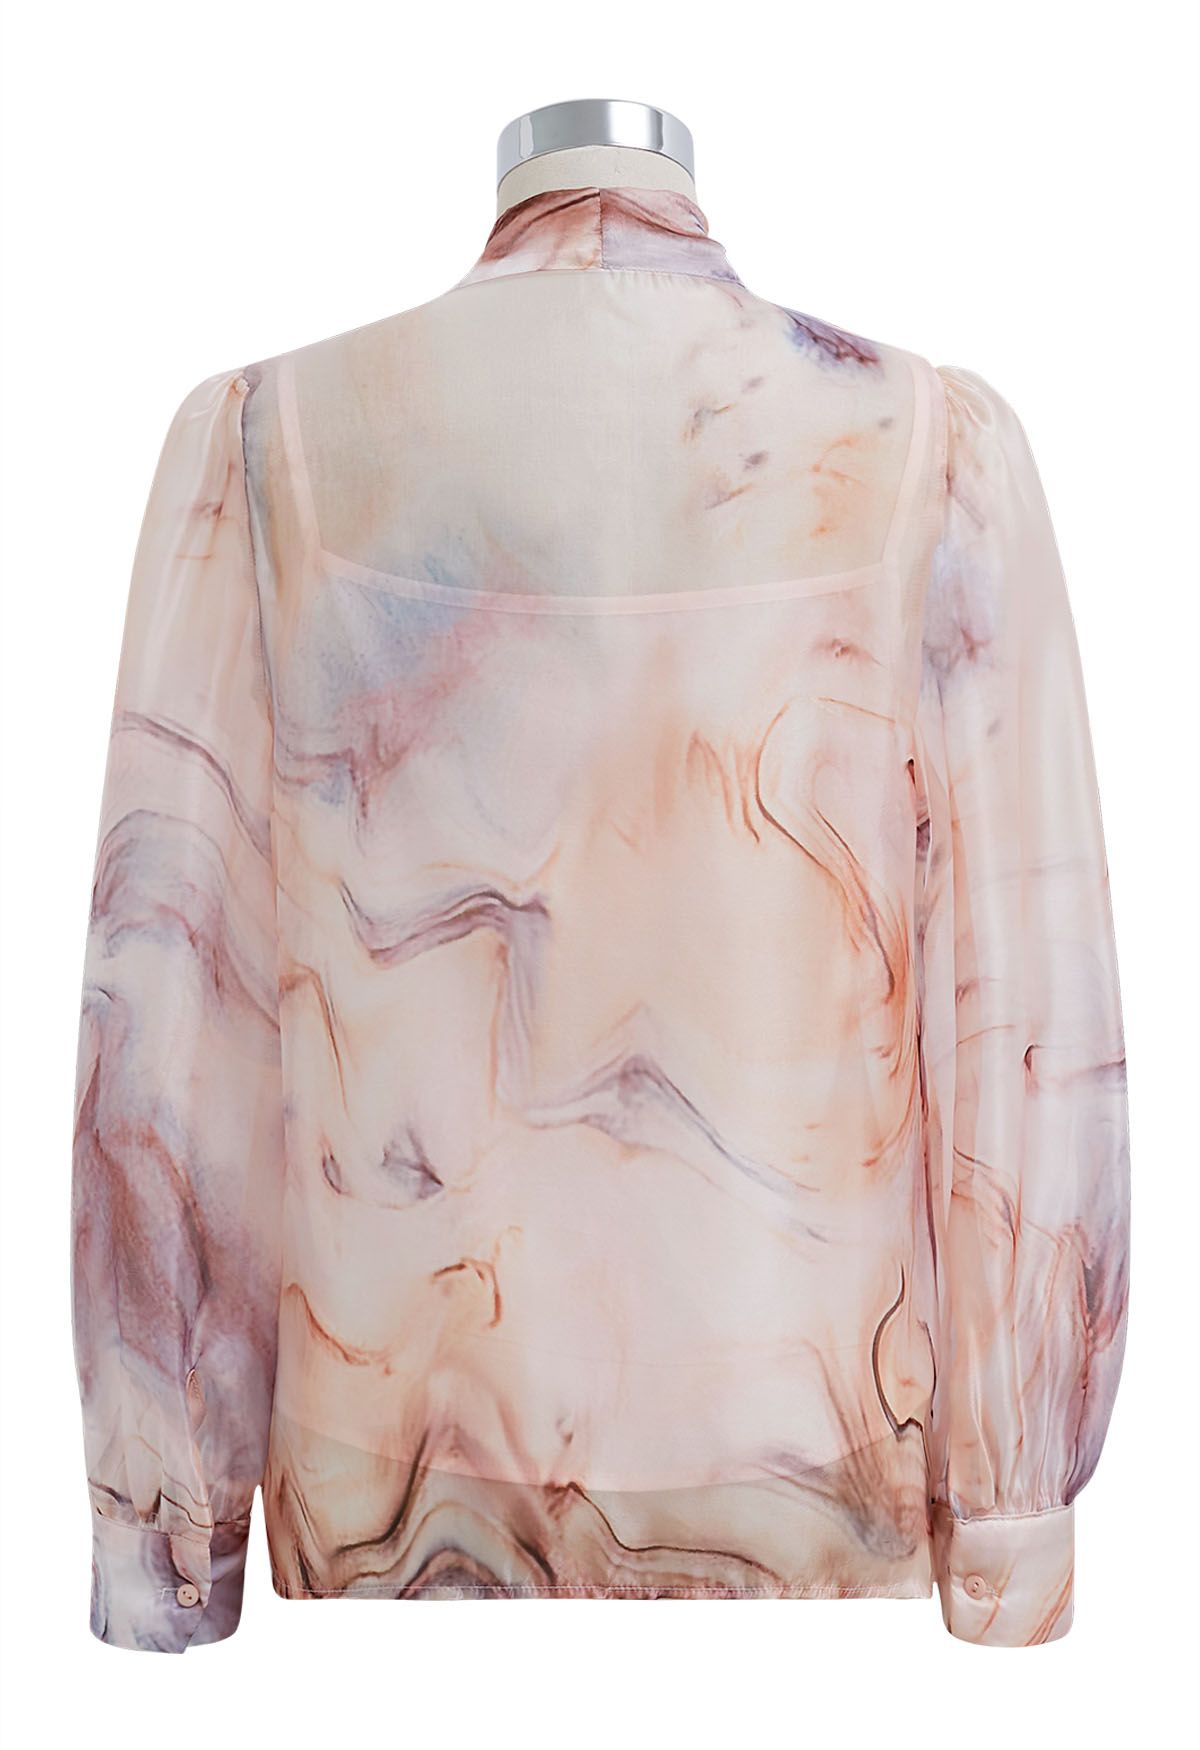 Elegante camisa transparente floral de acuarela con lazo en coral